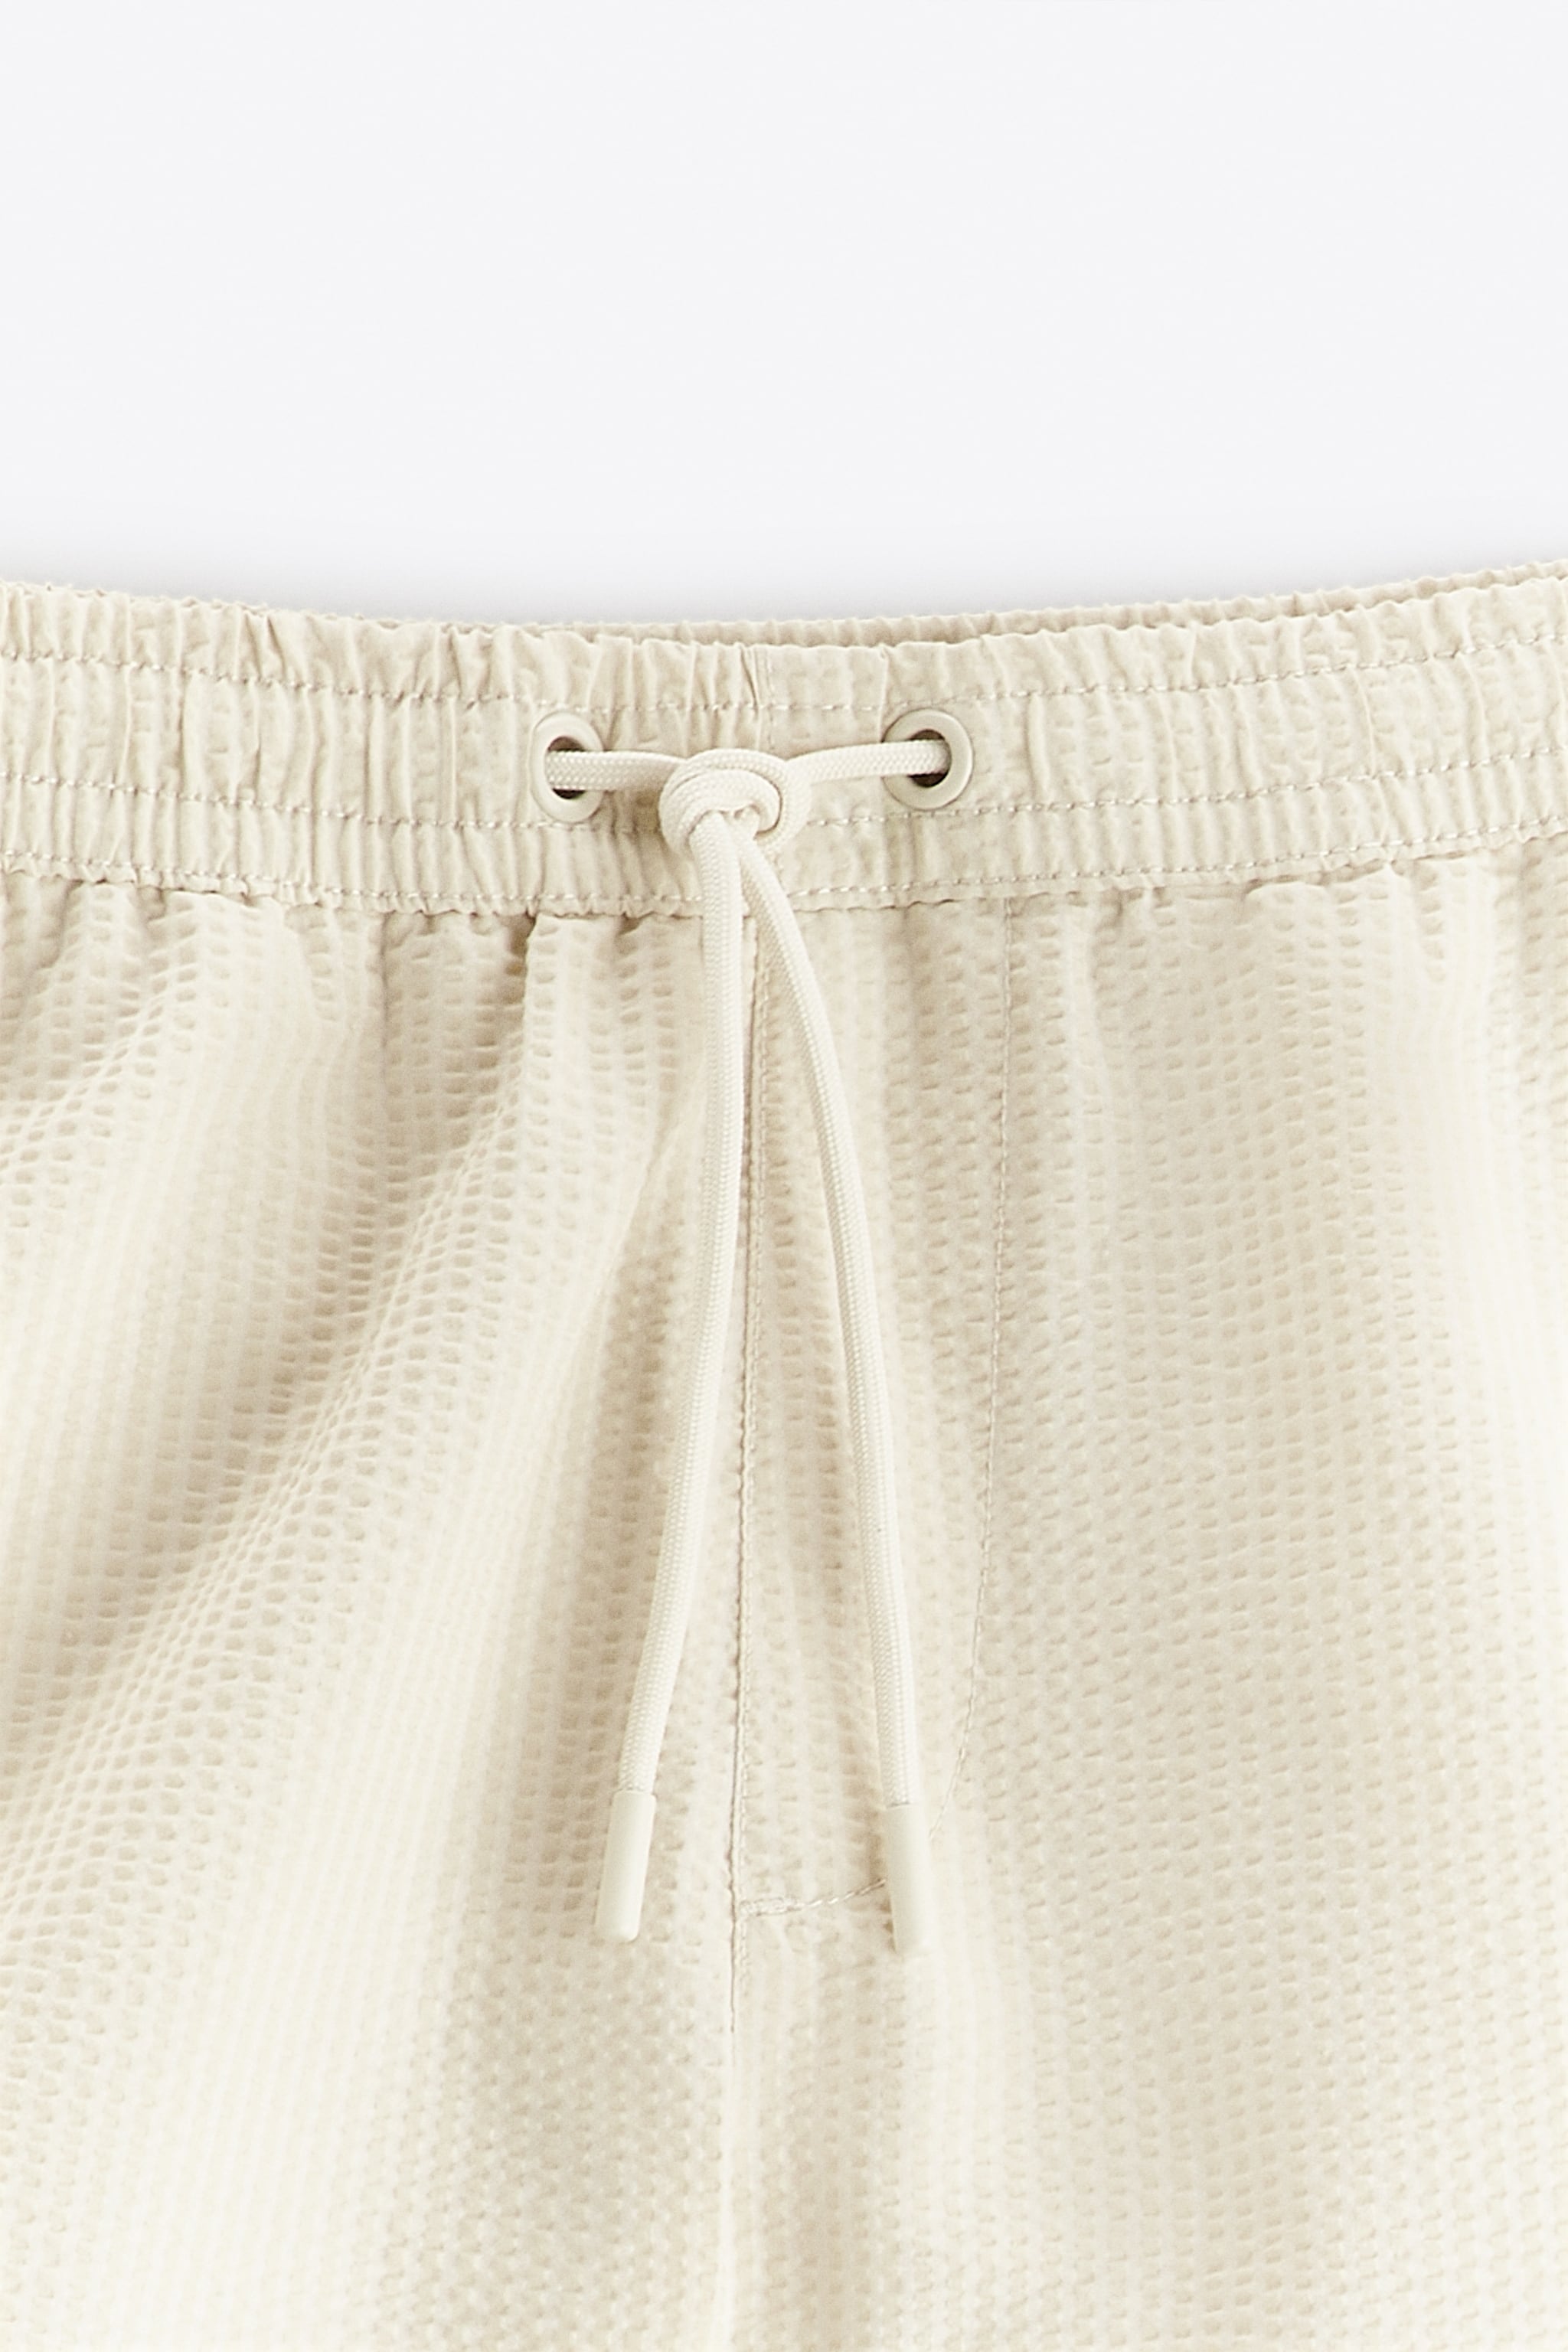 Cream Seersucker Drawstring Shorts (Medium)